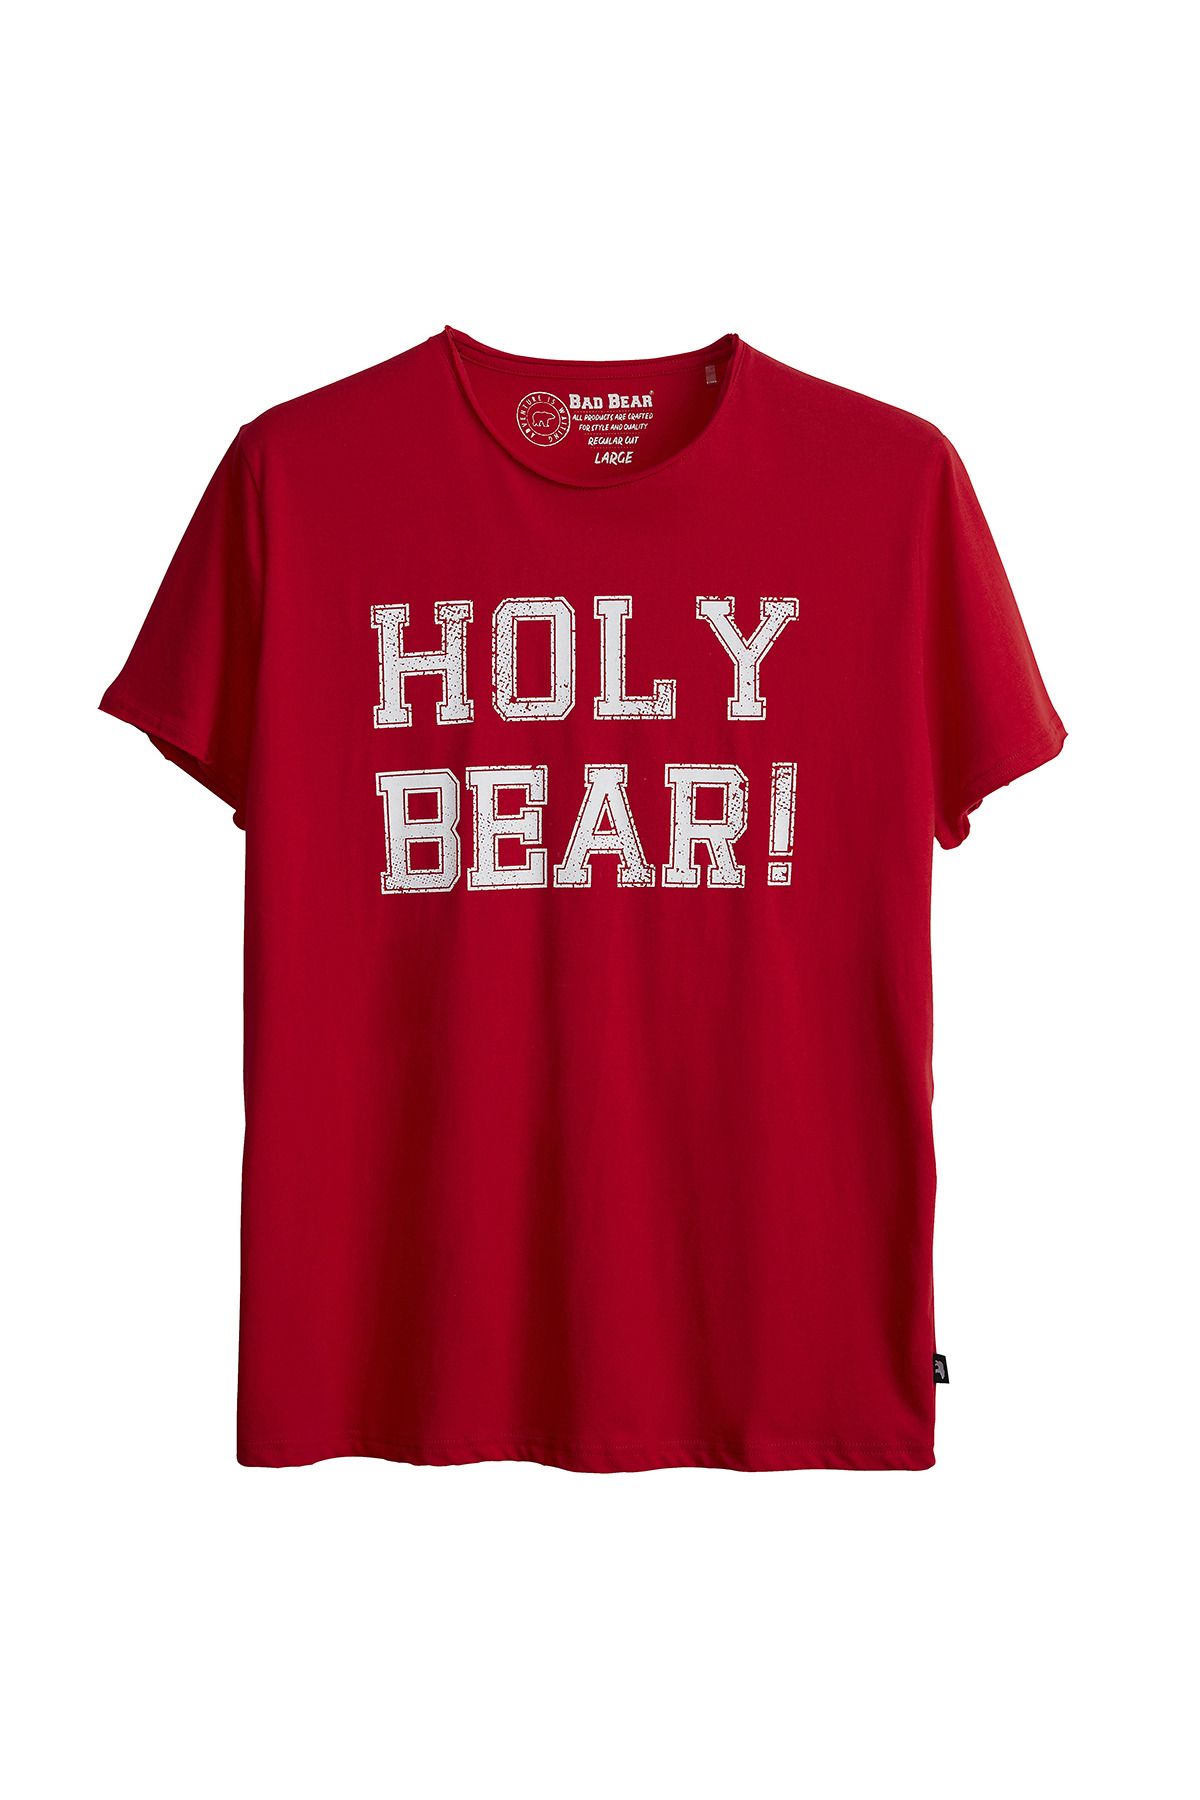 Bad Bear Holy Bear Tee Erkek Tshirt 21.01.07.026-c54